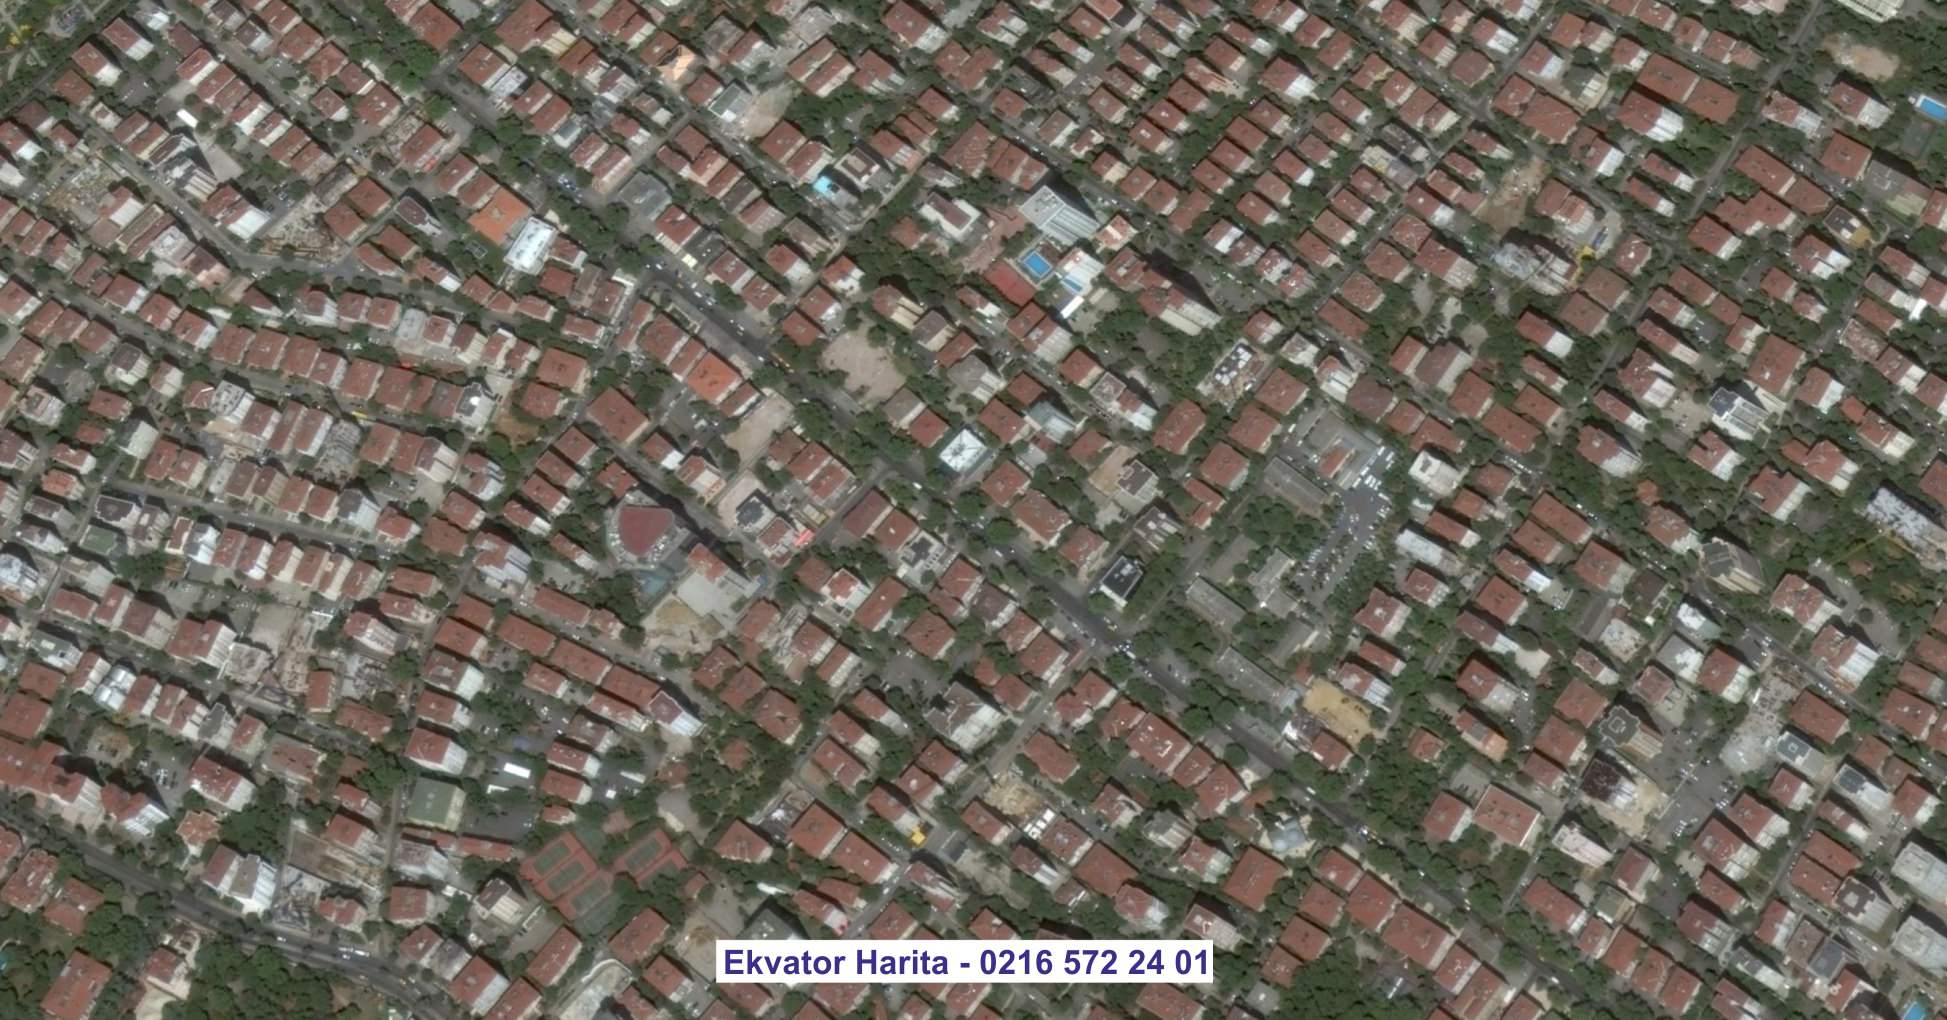 Beyoğlu Uydu Görüntüsü Örnek Fotoğrafı